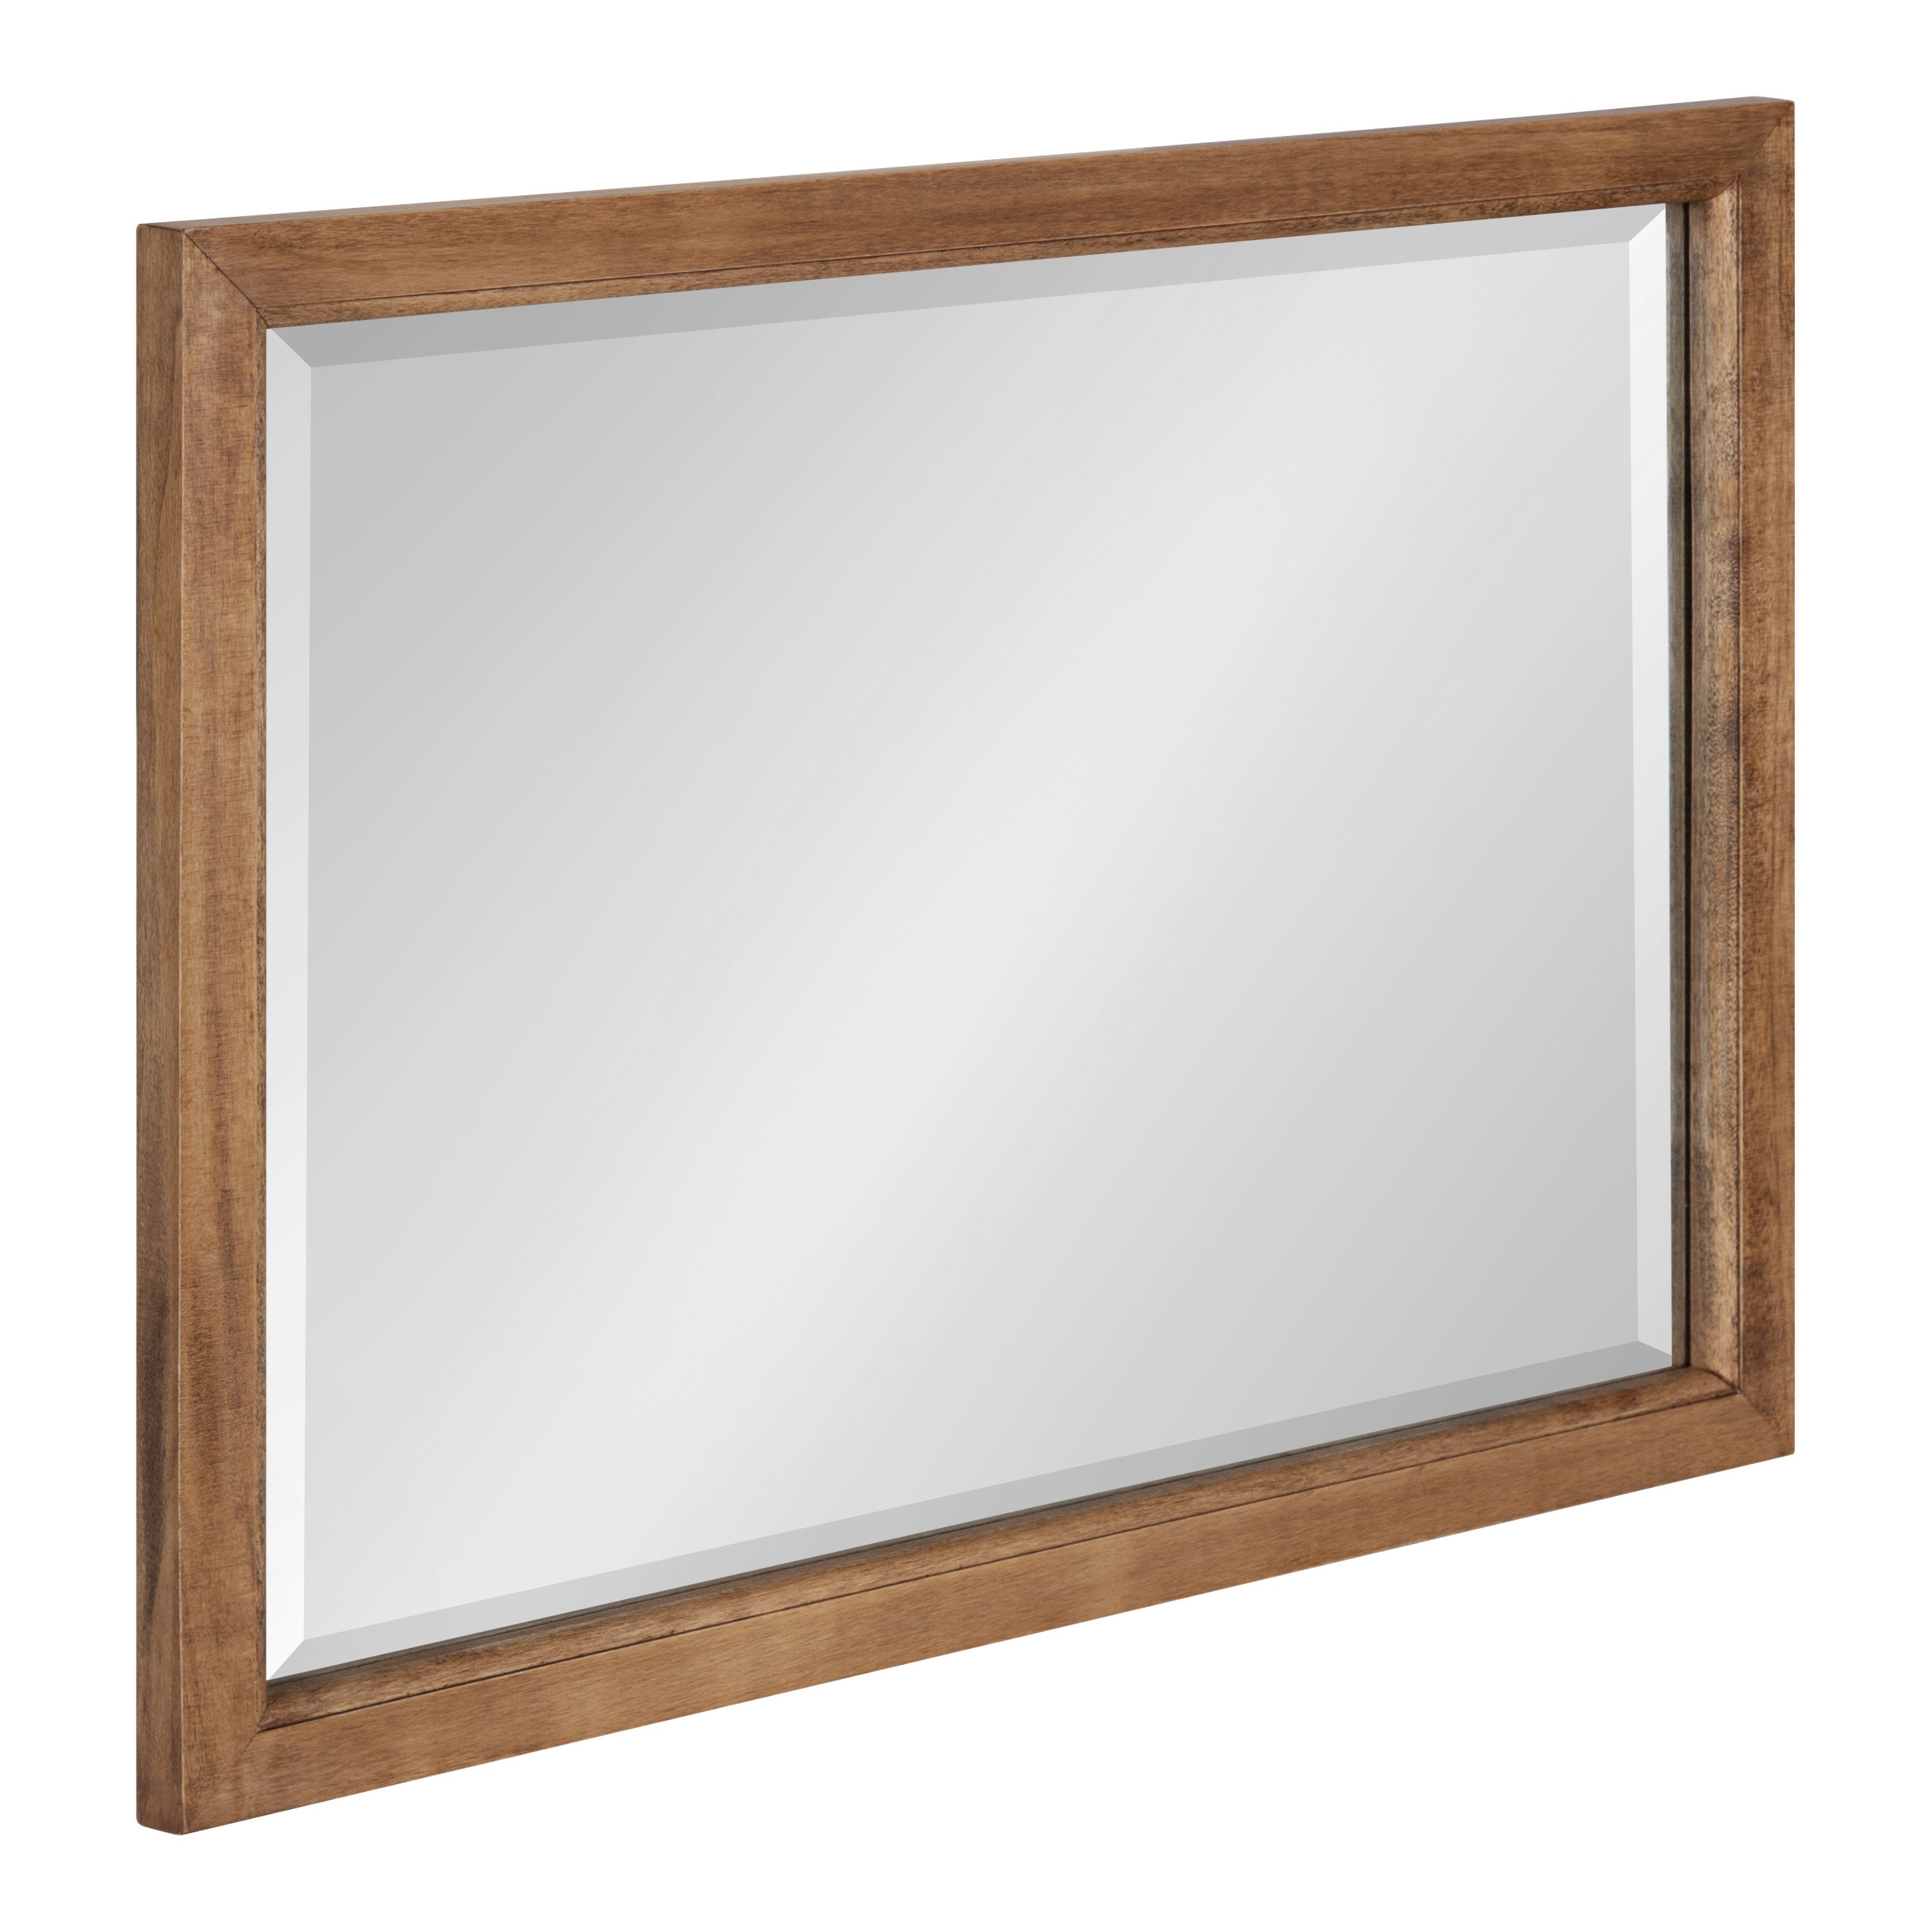 Hogan Wood Framed Wall Mirror